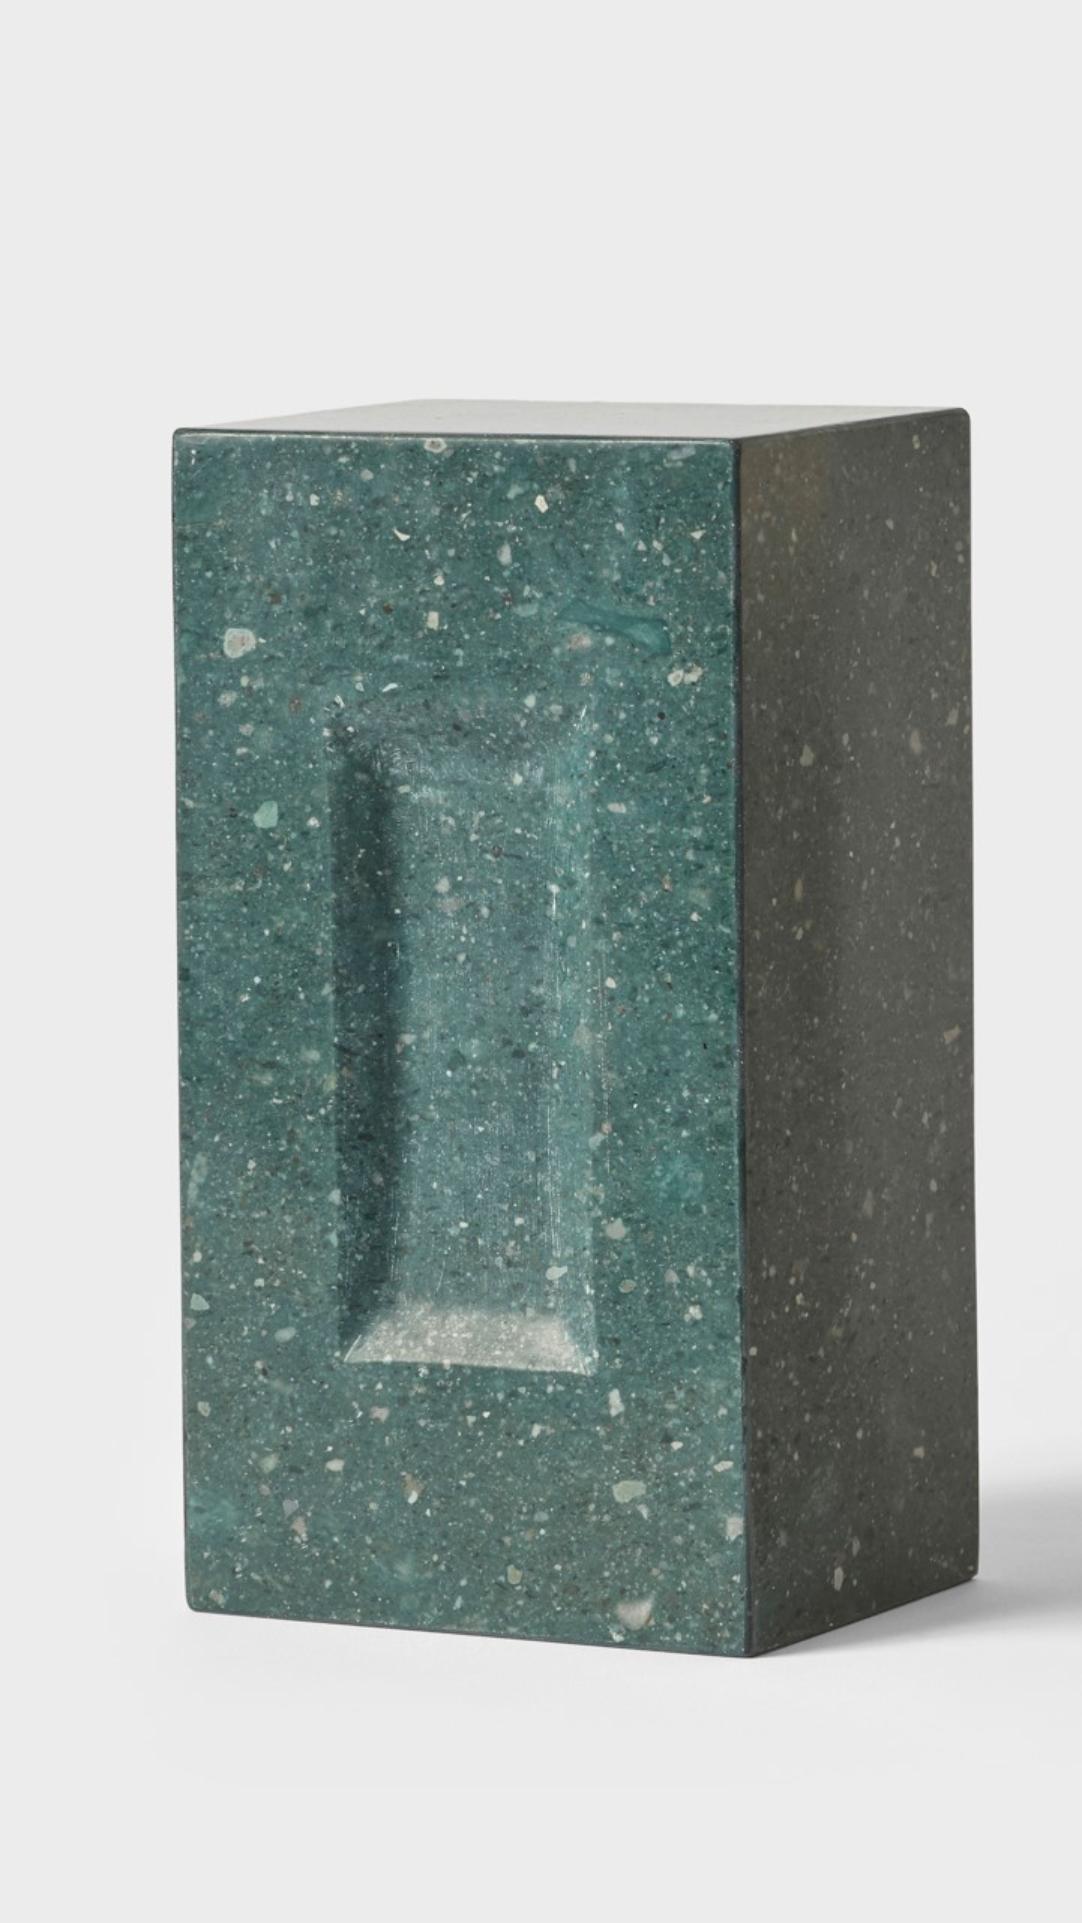 Brique par Estudio Rafael Freyre
Dimensions : L 12,5 D 9 x H 23 cm 
Matériaux : Pierres des Andes
Également disponible : autres finitions disponibles.

La brique est un élément constructif générique qui fait partie de l'imaginaire urbain. Au Pérou,